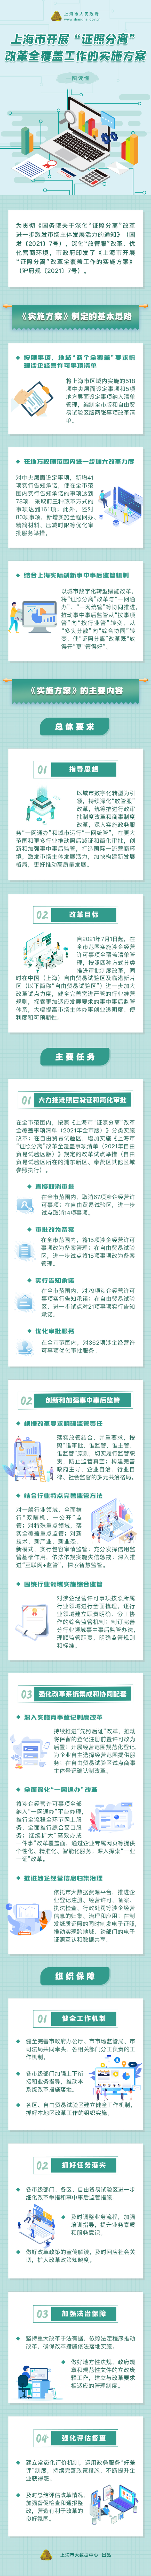 《上海市开展“证照分离”改革全覆盖工作的实施方案》政策图解.jpg